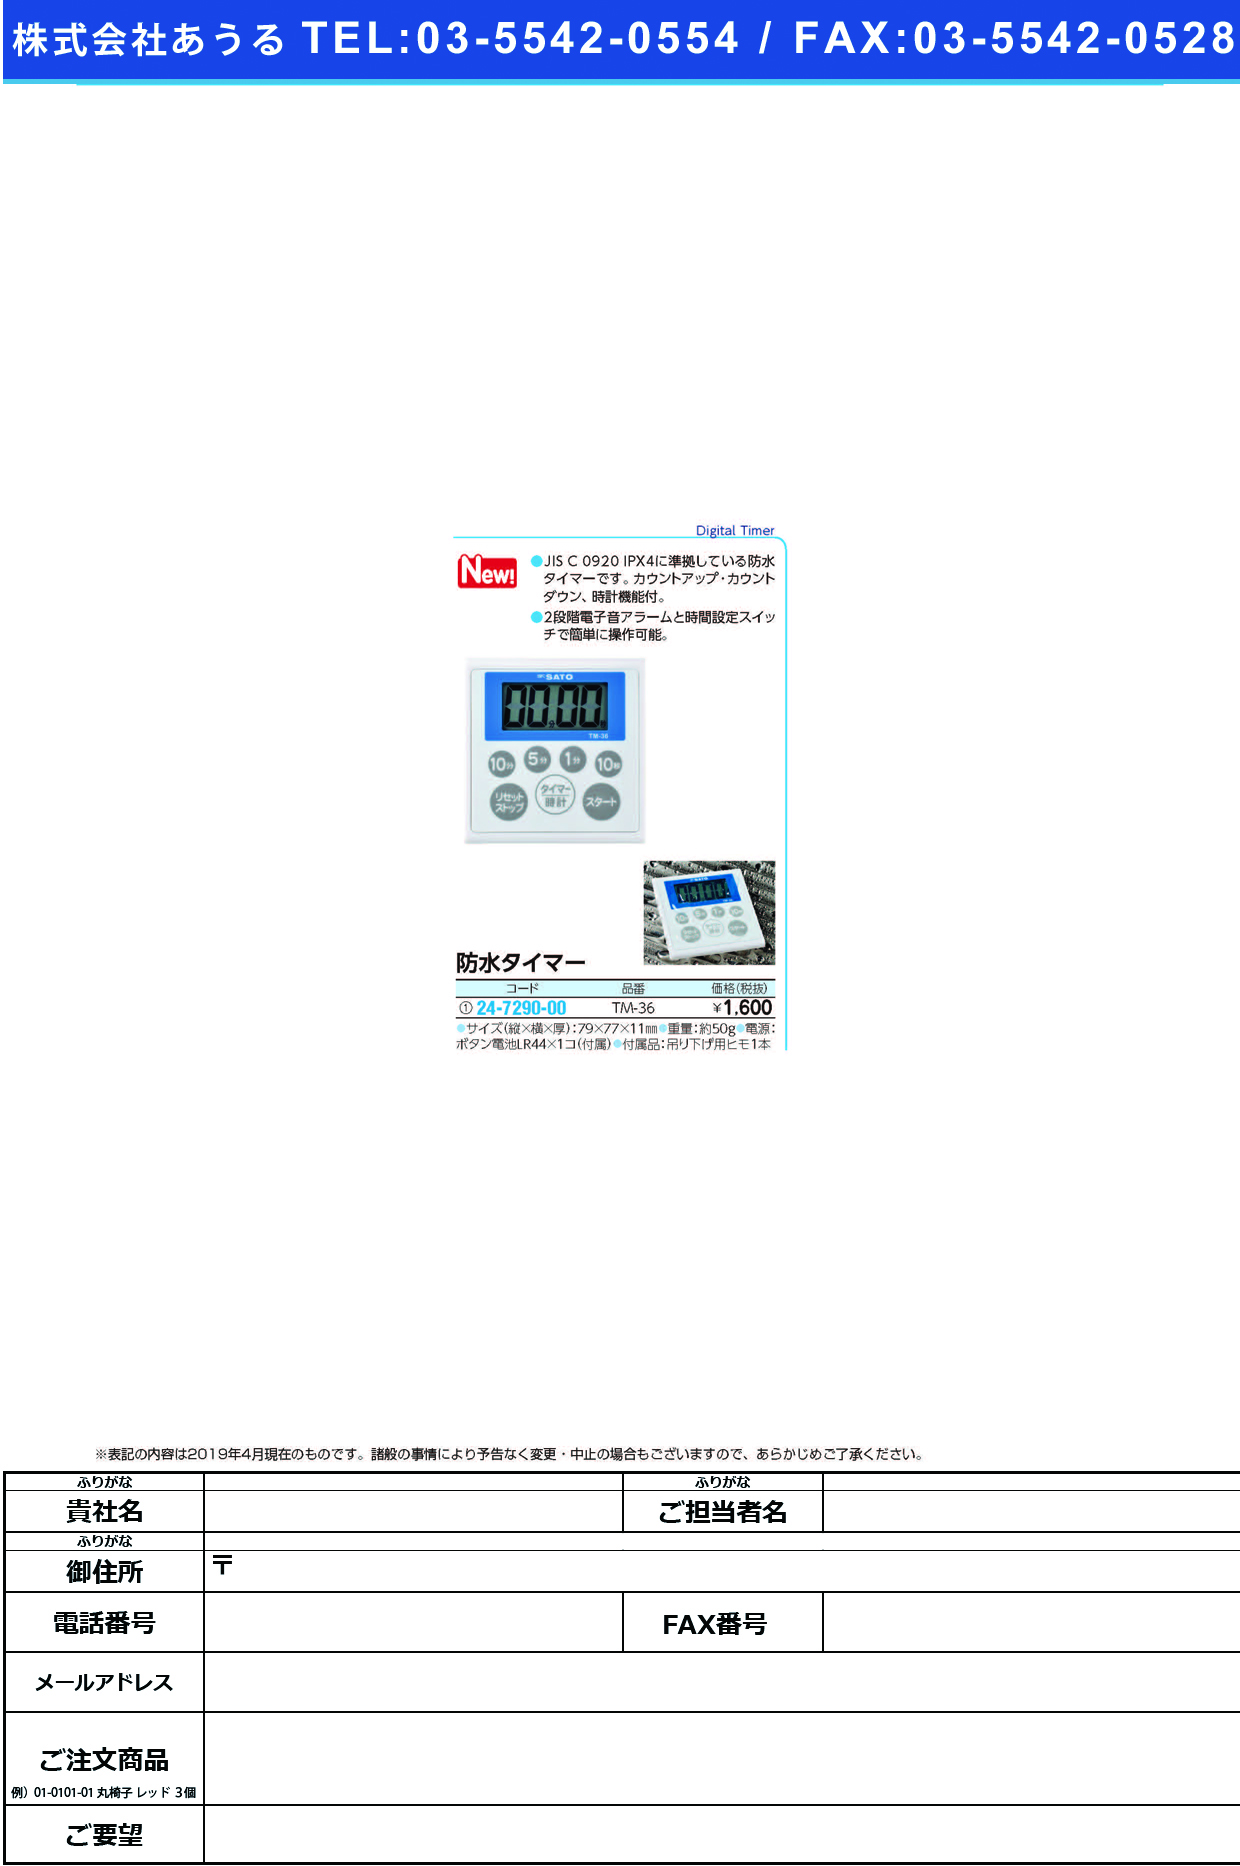 (24-7290-00)防水タイマーTM-36 ﾎﾞｳｽｲﾀｲﾏｰ(佐藤計量器製作所)【1個単位】【2019年カタログ商品】